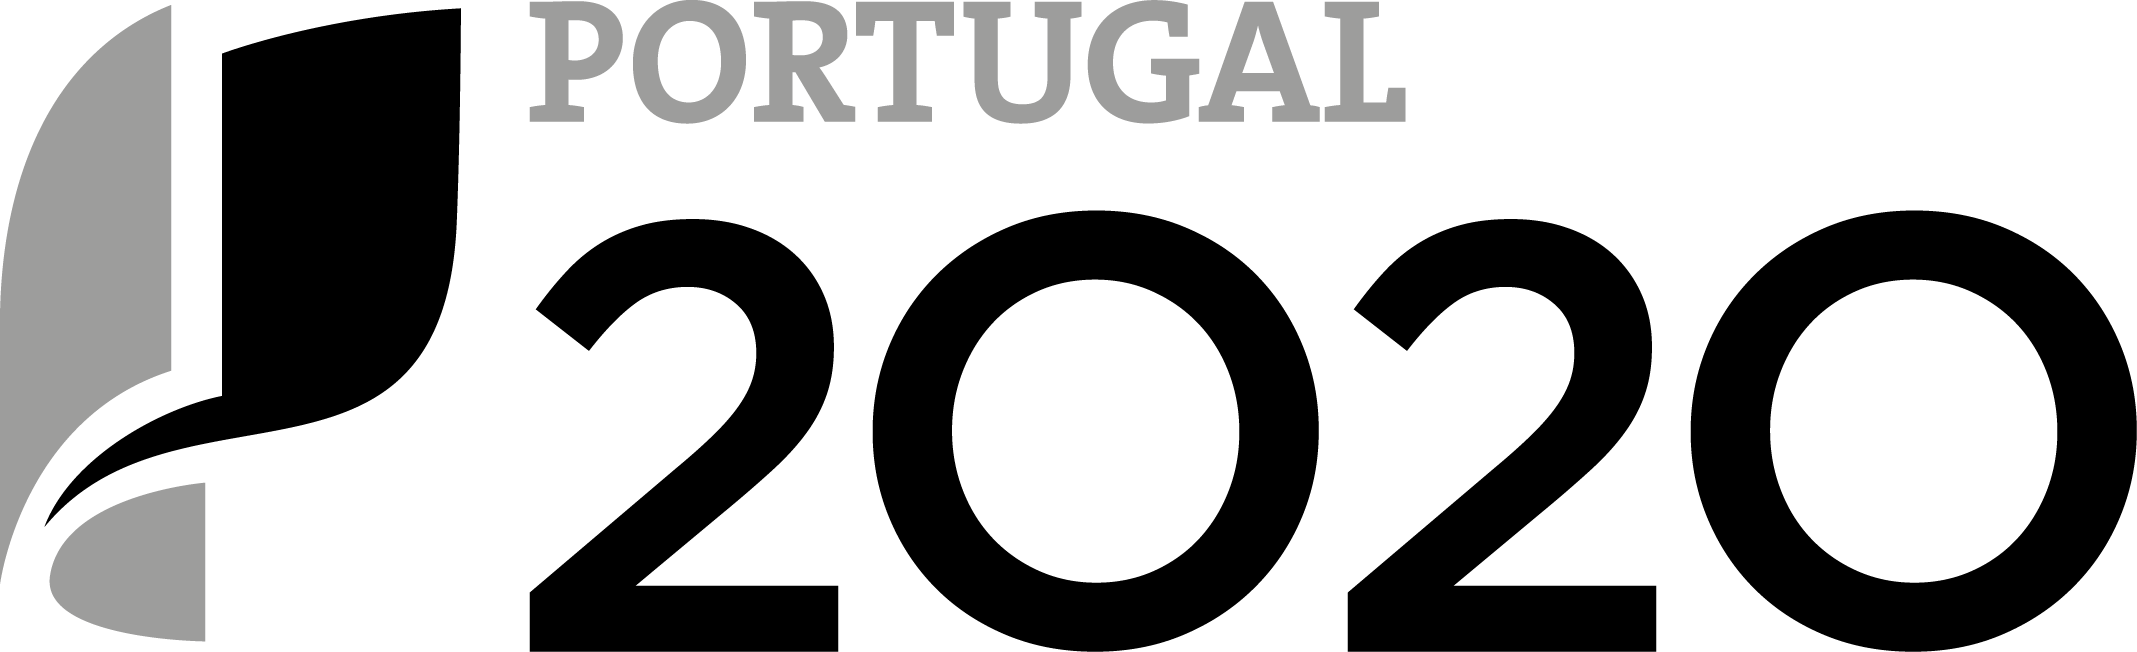 Logo Portugal 2020 Preto Cinzento